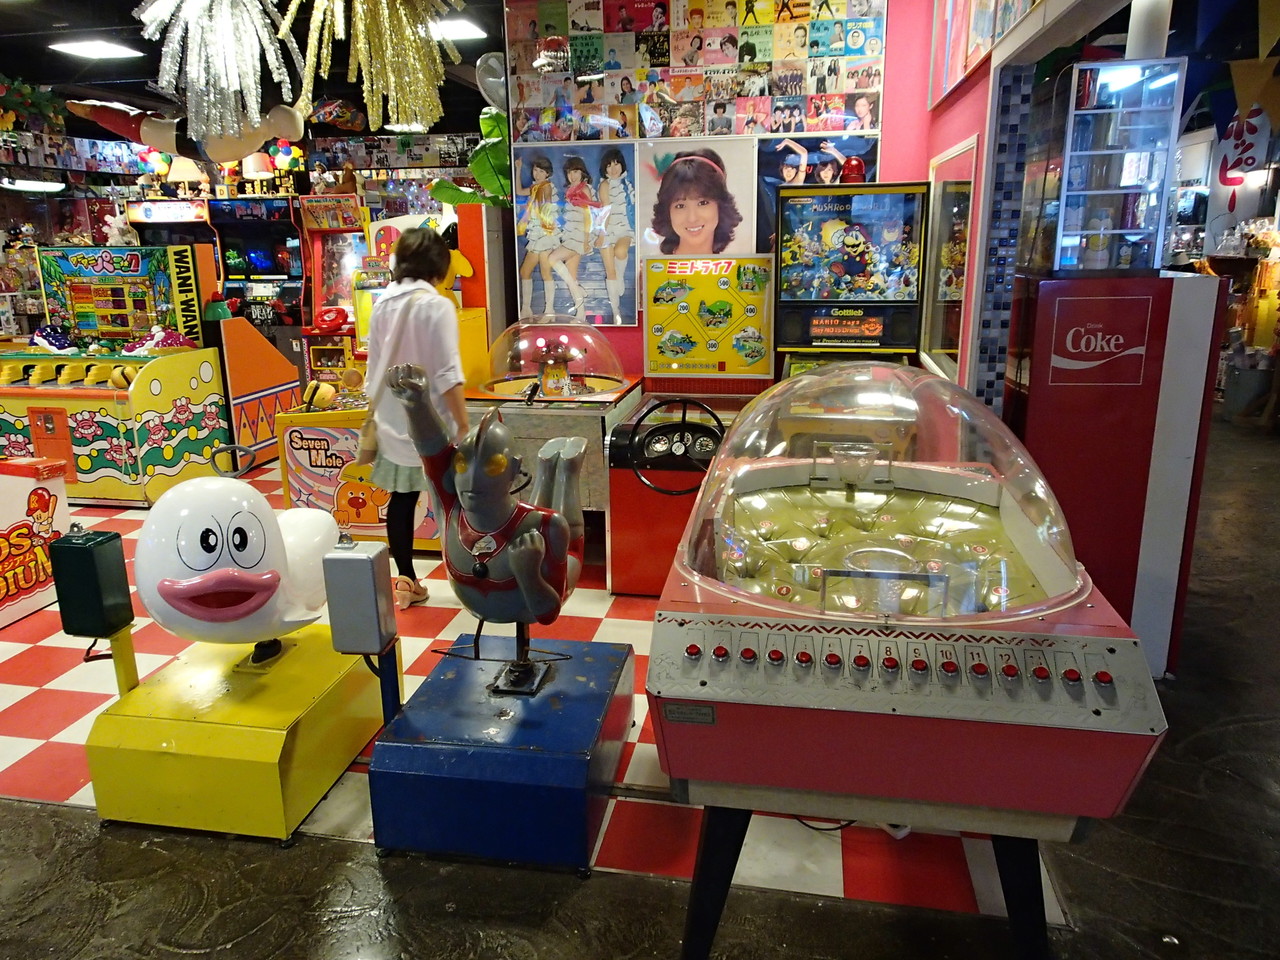 台場一丁目商店街 はレトロ感満載 駄菓子屋ゲームやエレメカだらけだ